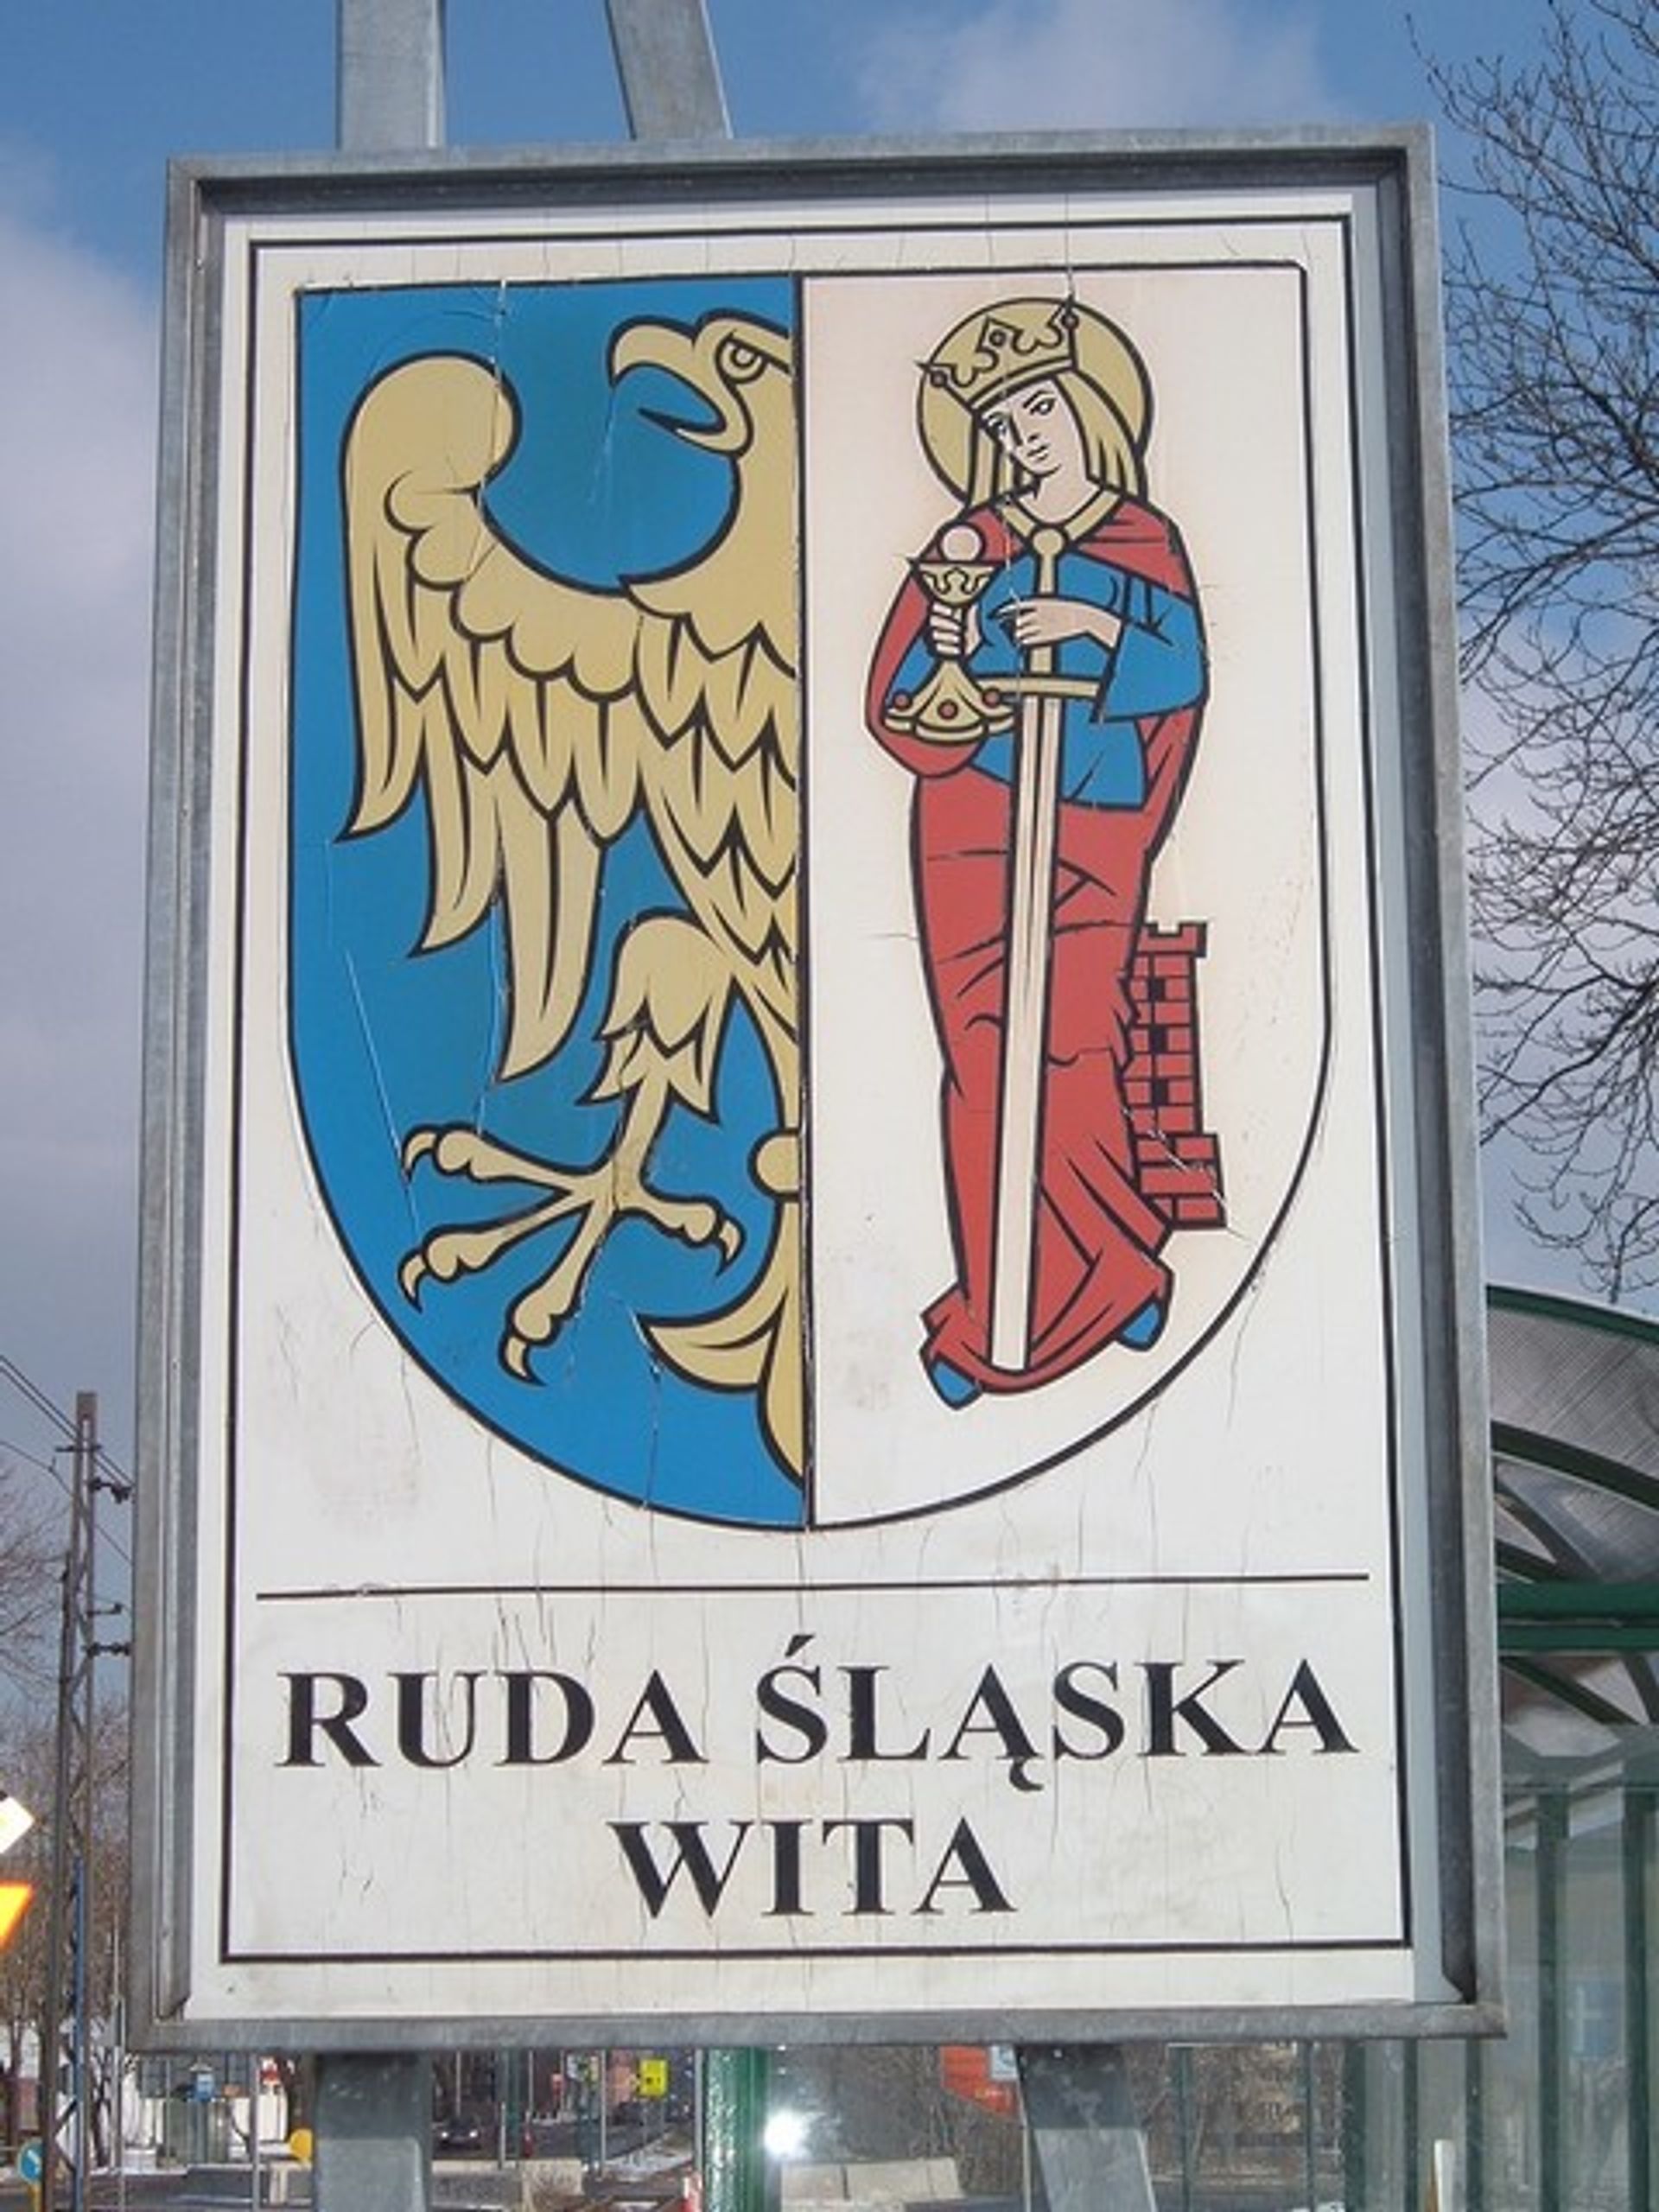  Ruda Śląska: Wybierz nazwę dla nowego osiedla